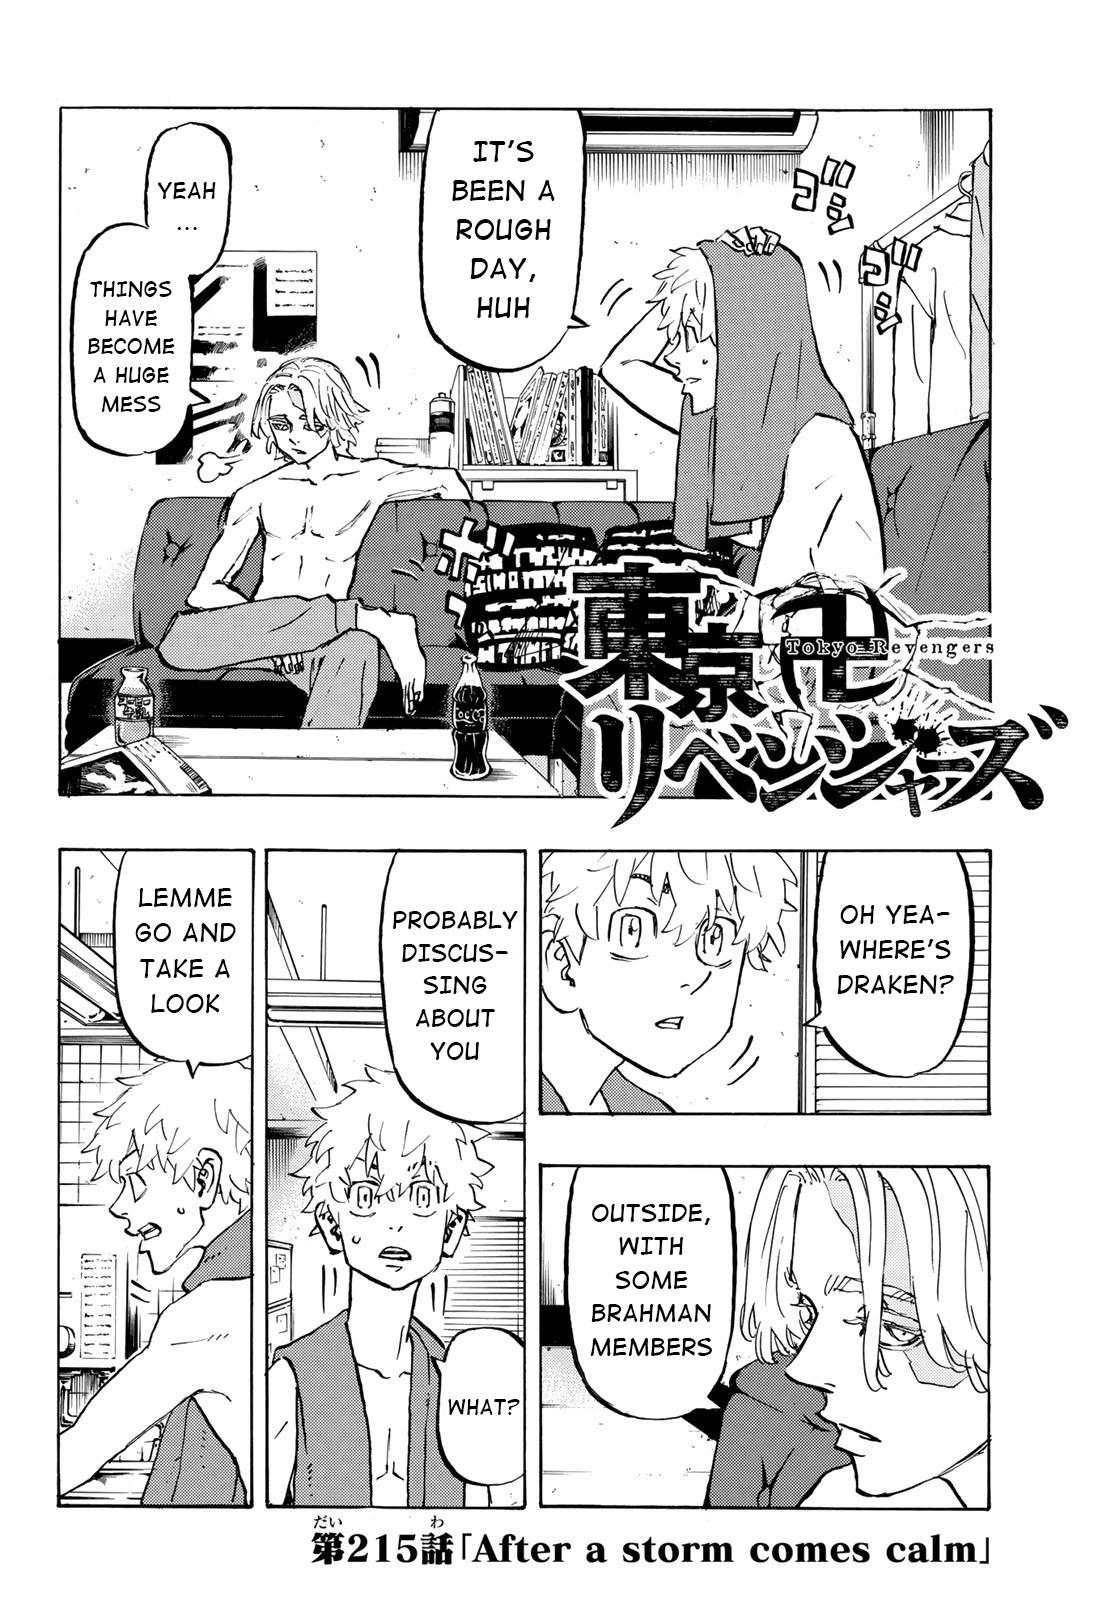 Manga tokyo revengers chapter 215